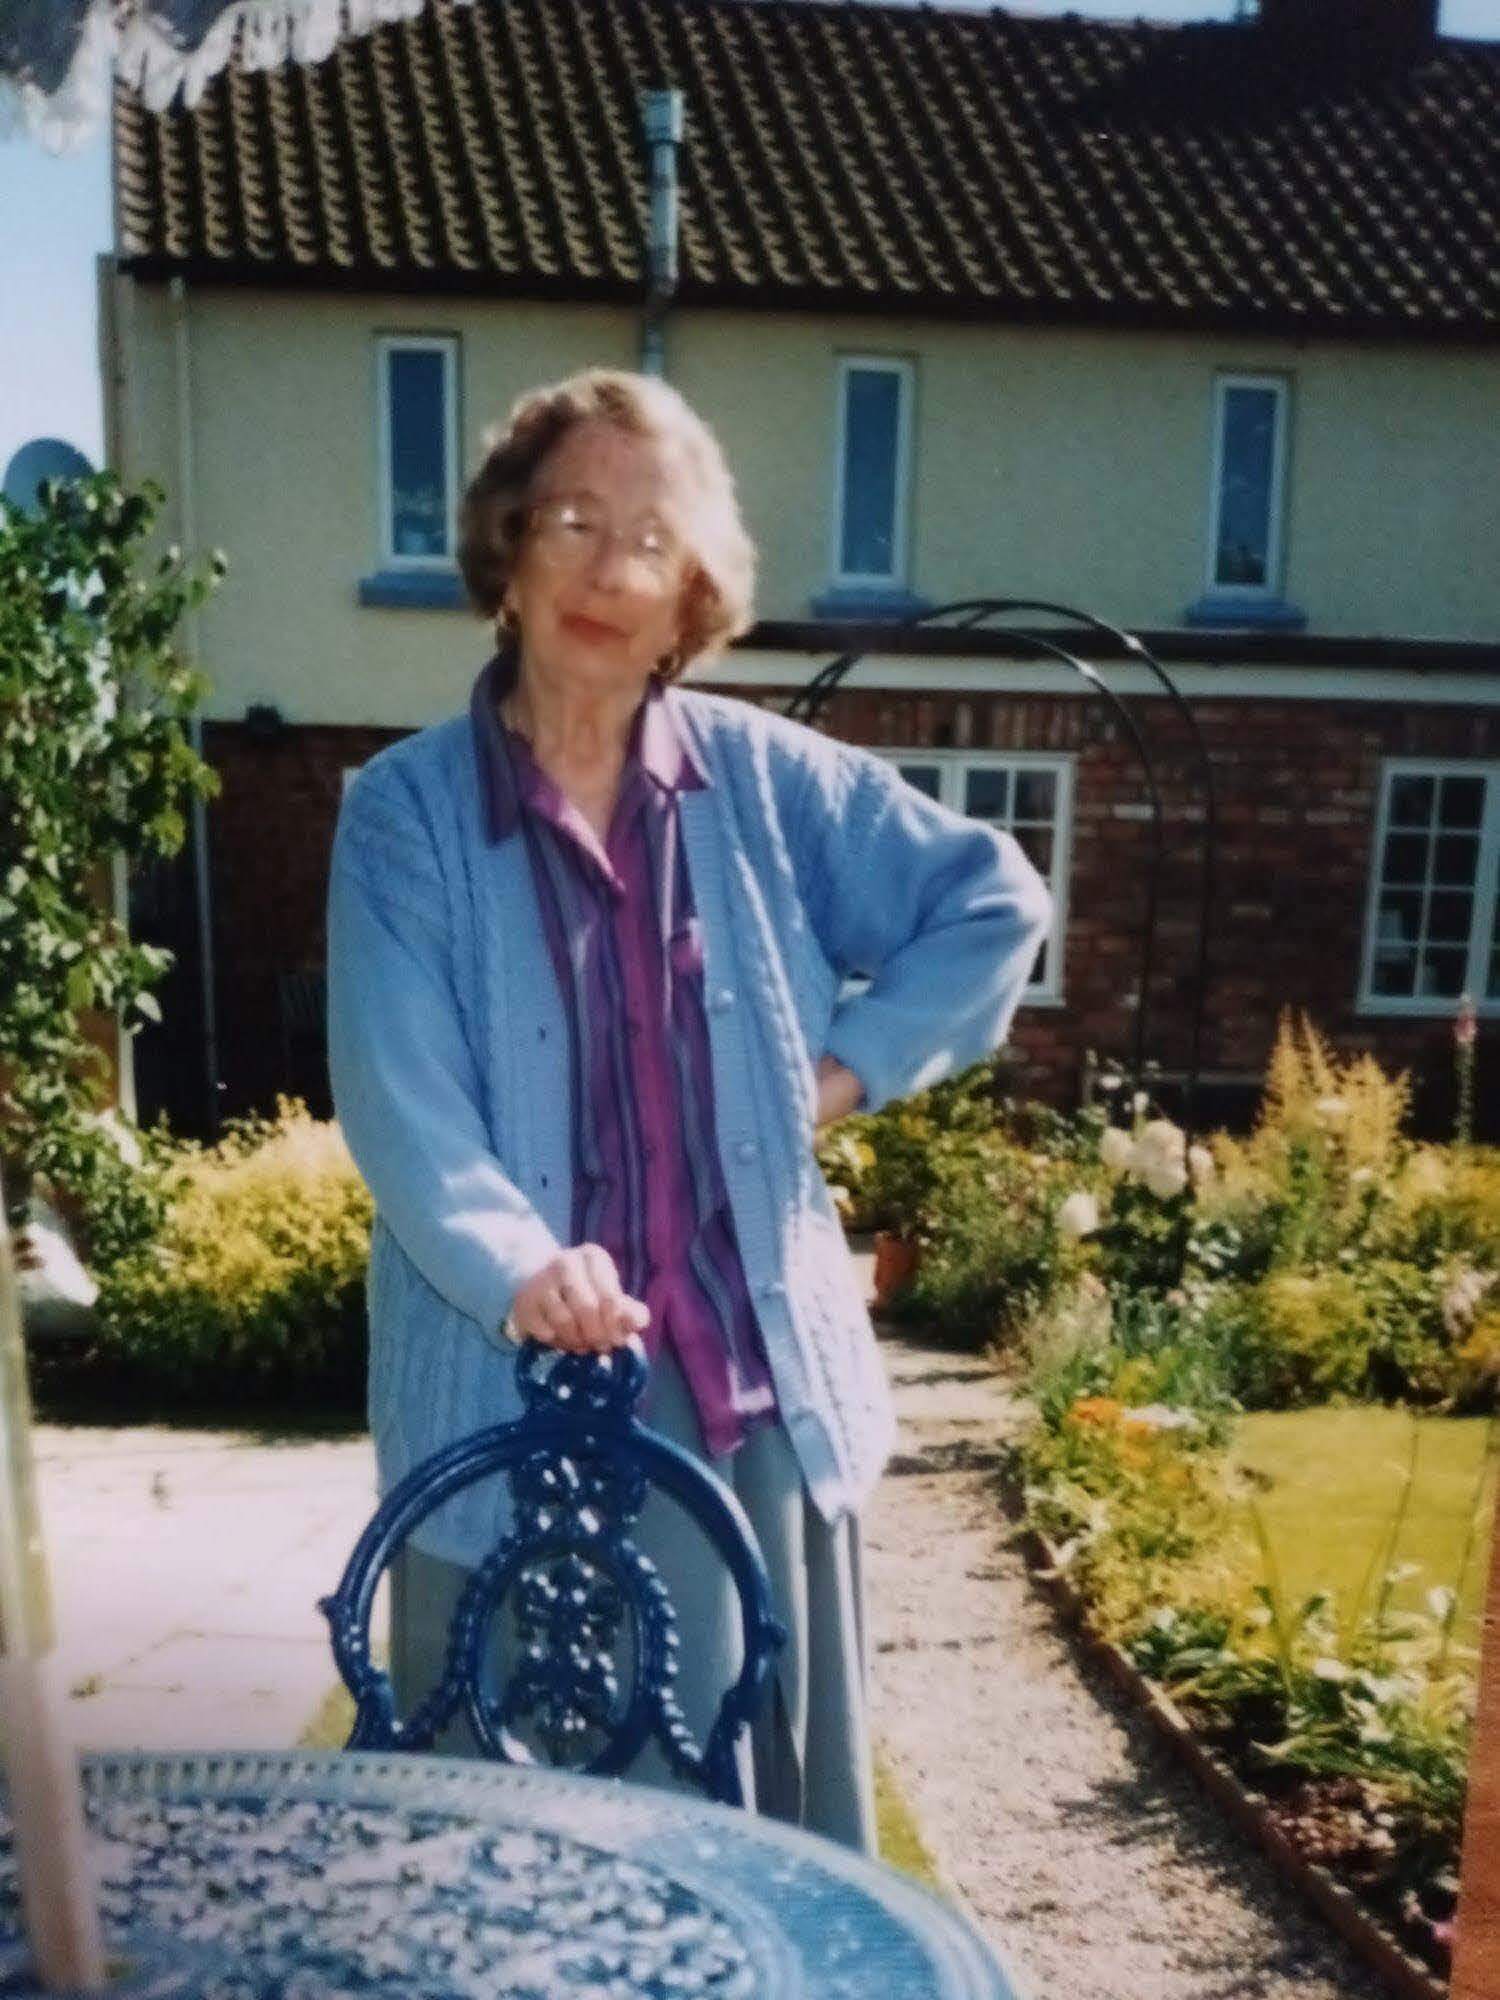 Doris Lee in her garden in York